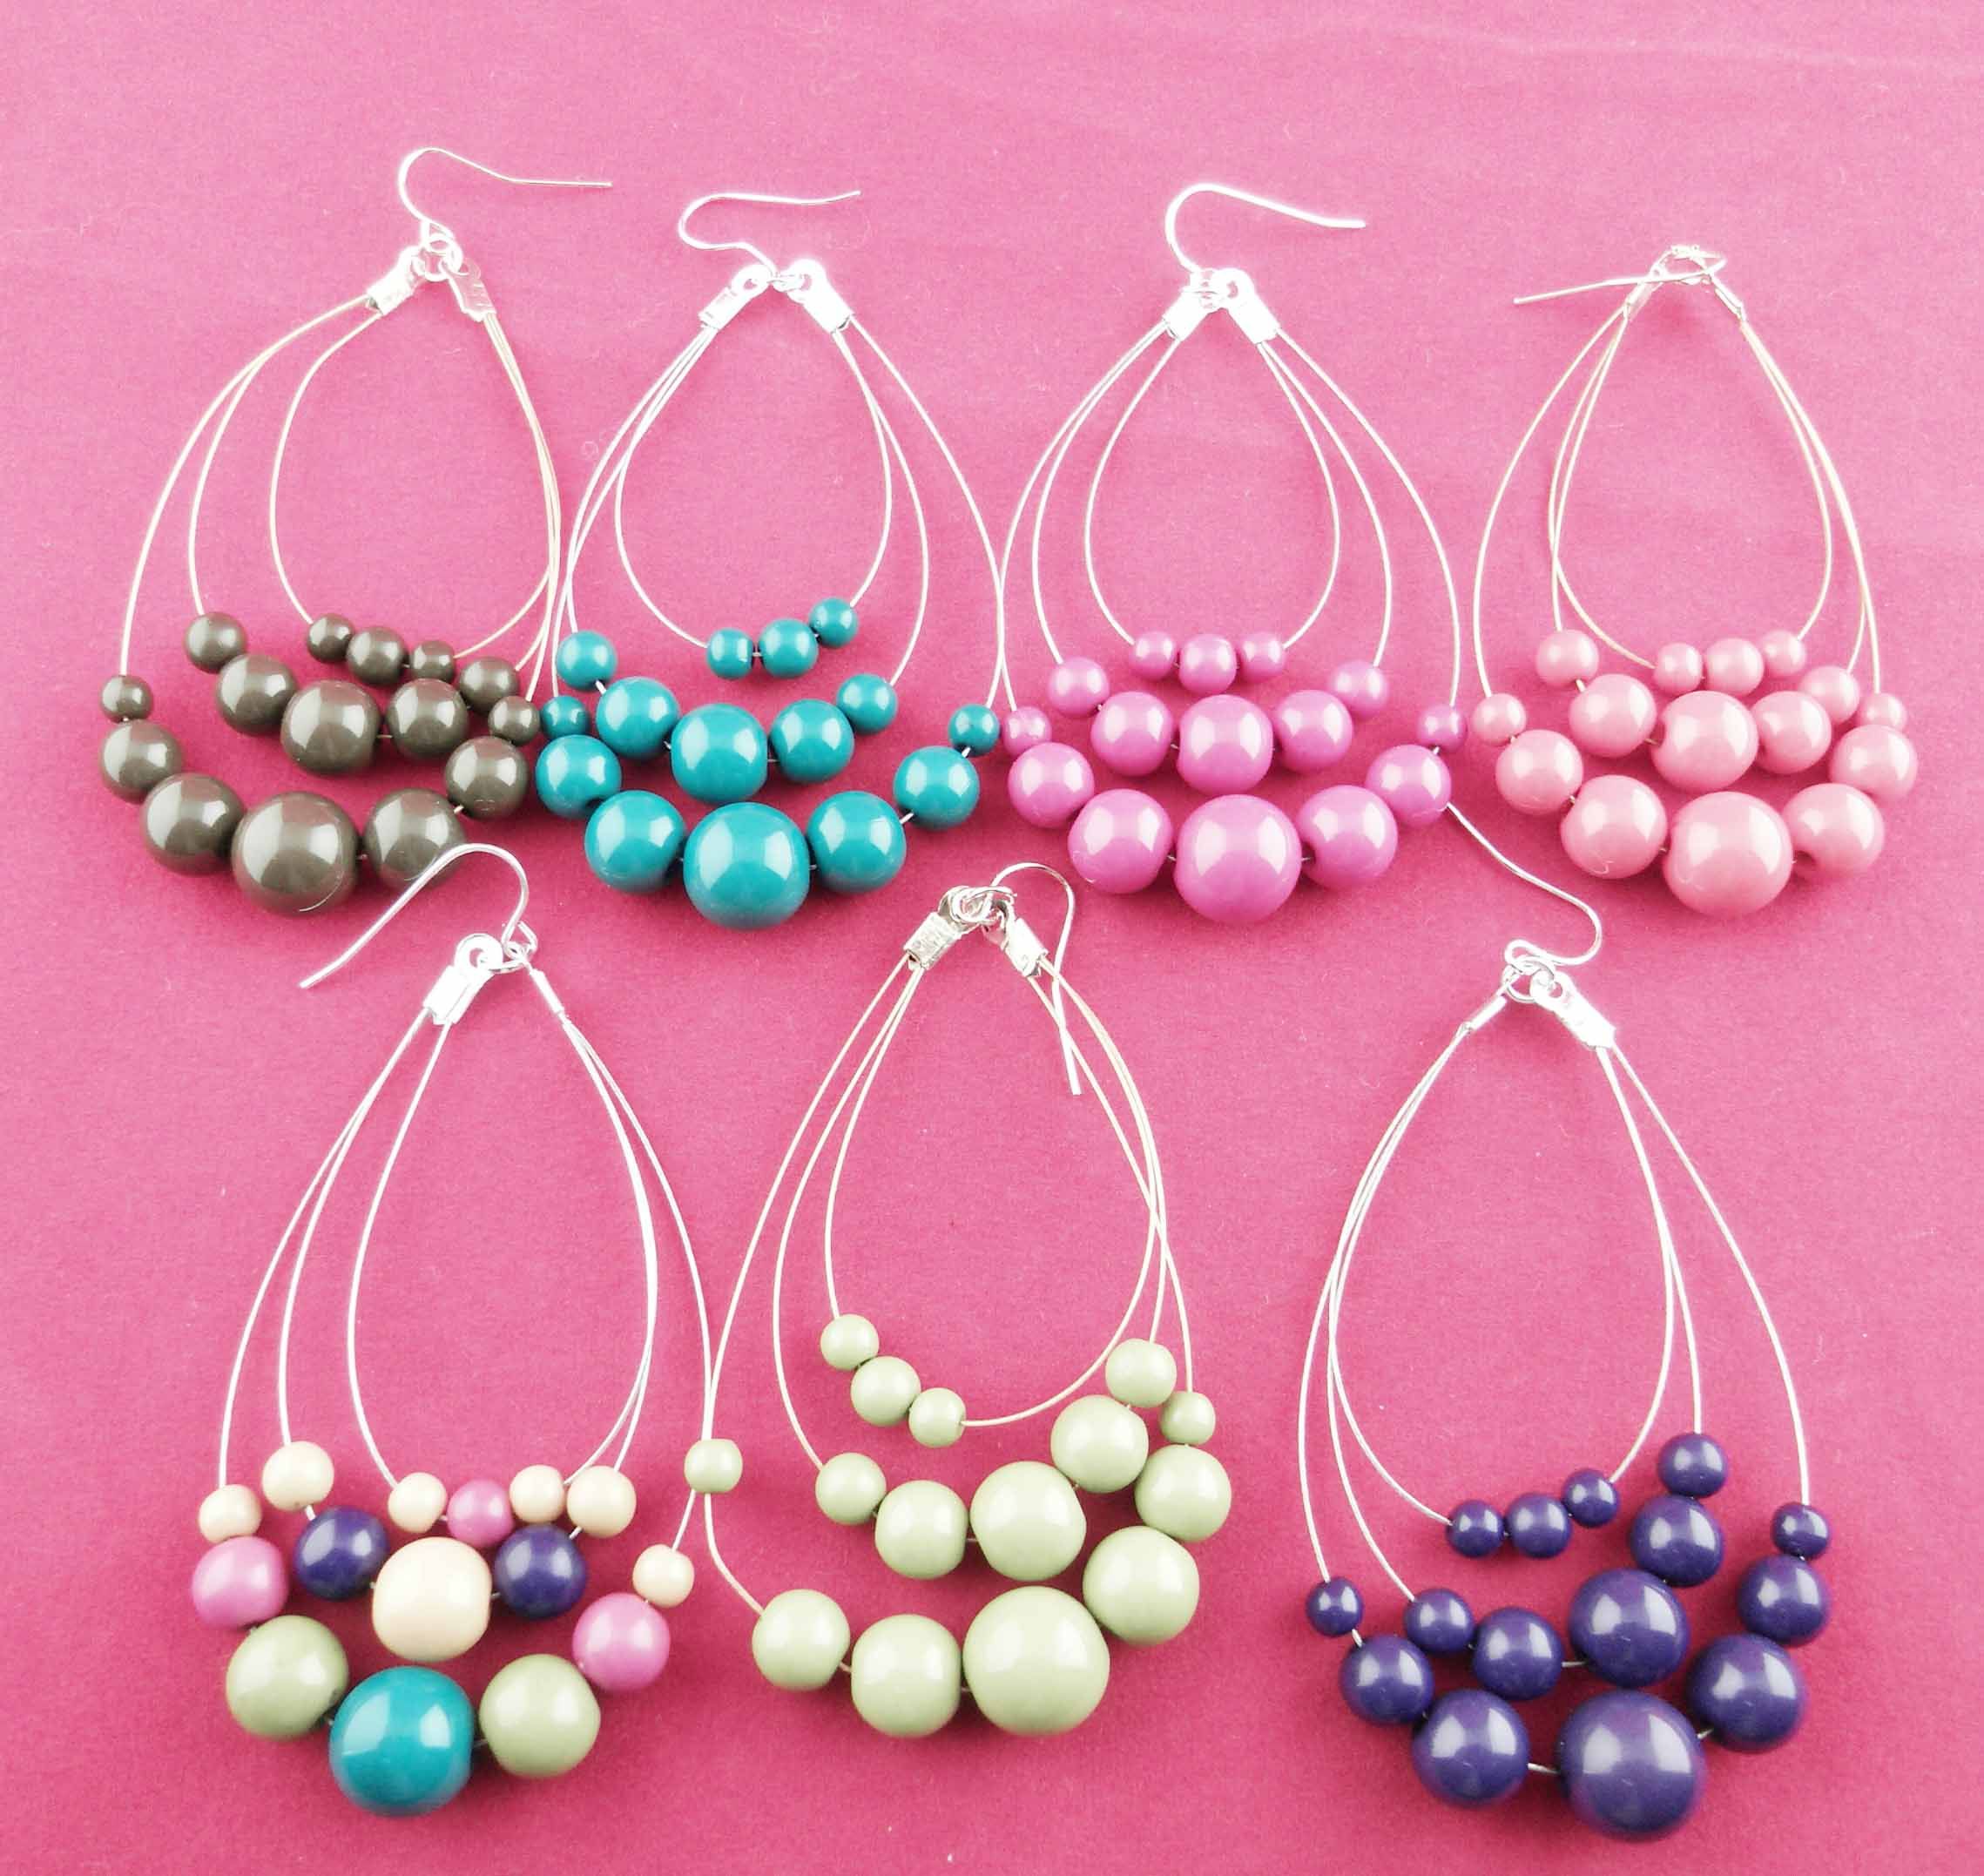 Earrings beaded easy spiral wire make bead diy headpins wrap earring beads handmade pearl dangles pearls yang lisa